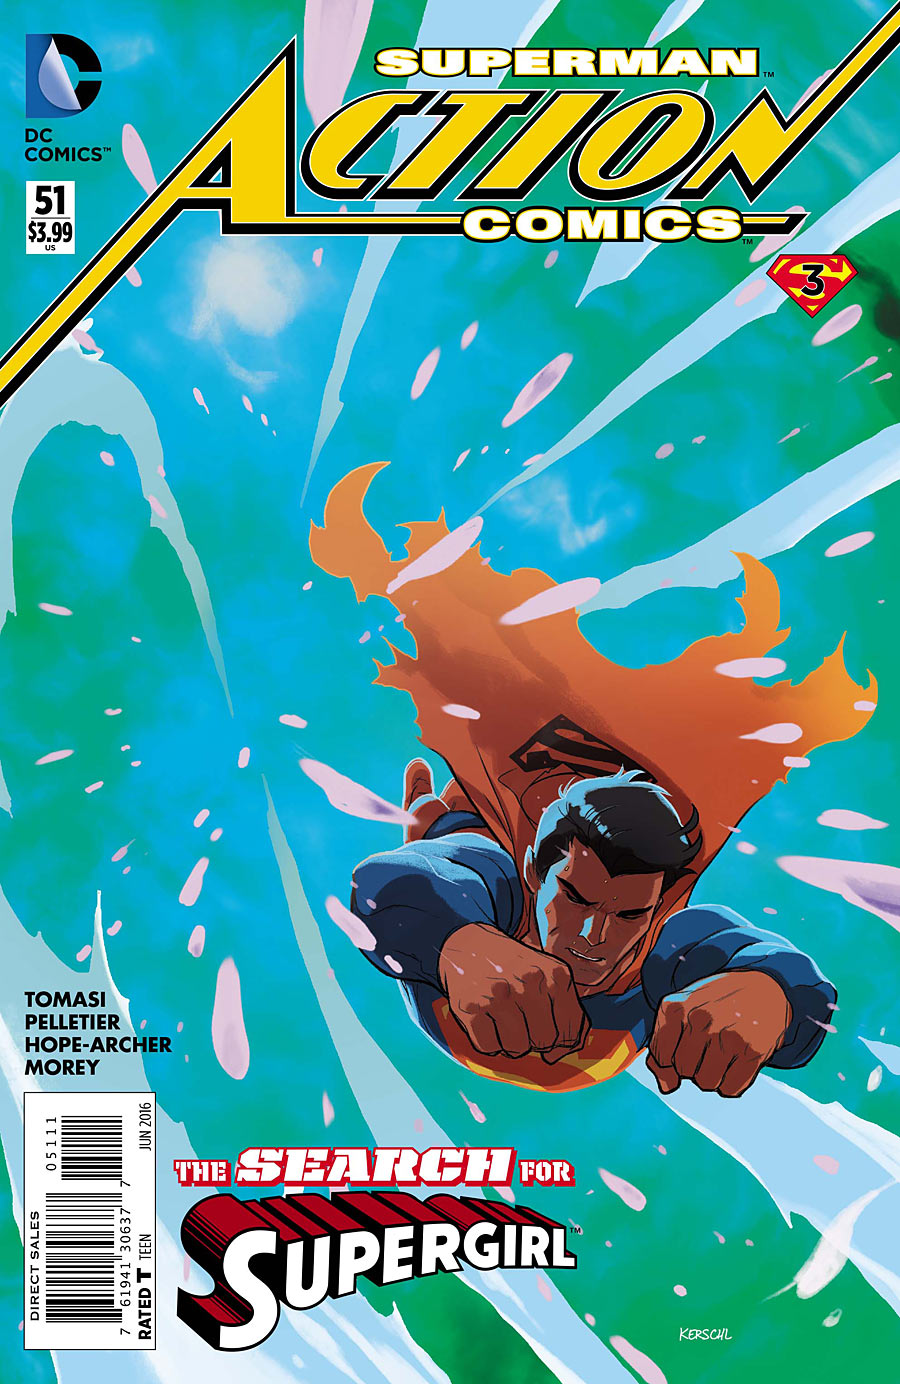 Action Comics #51 (Final Days)